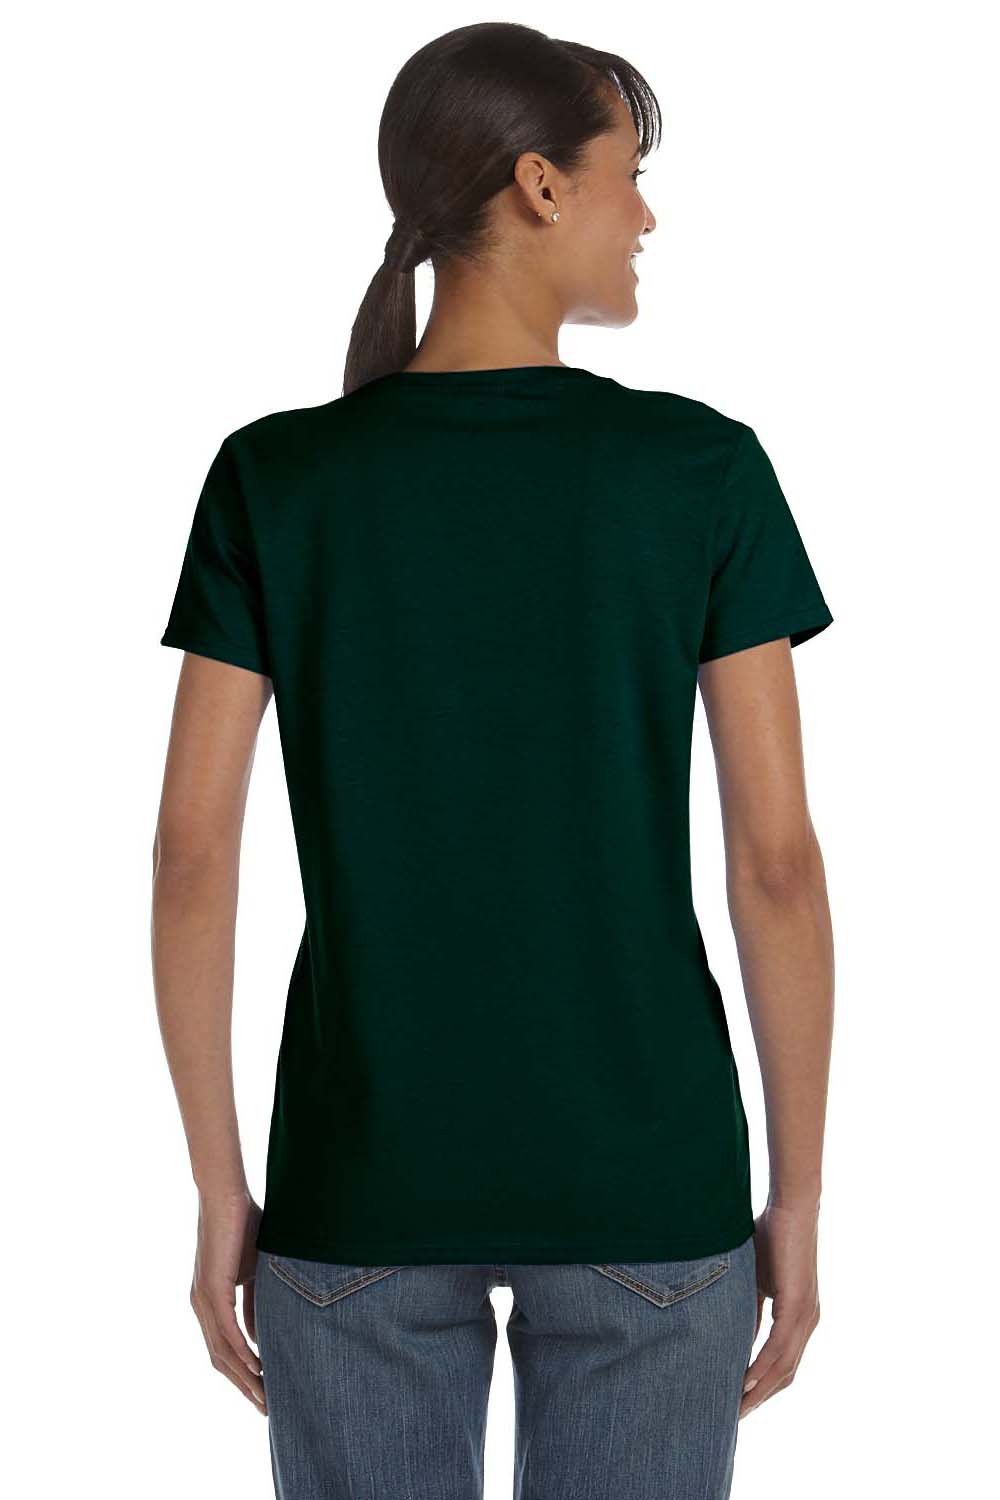 Gildan G500L Womens Short Sleeve Crewneck T-Shirt Forest Green Back